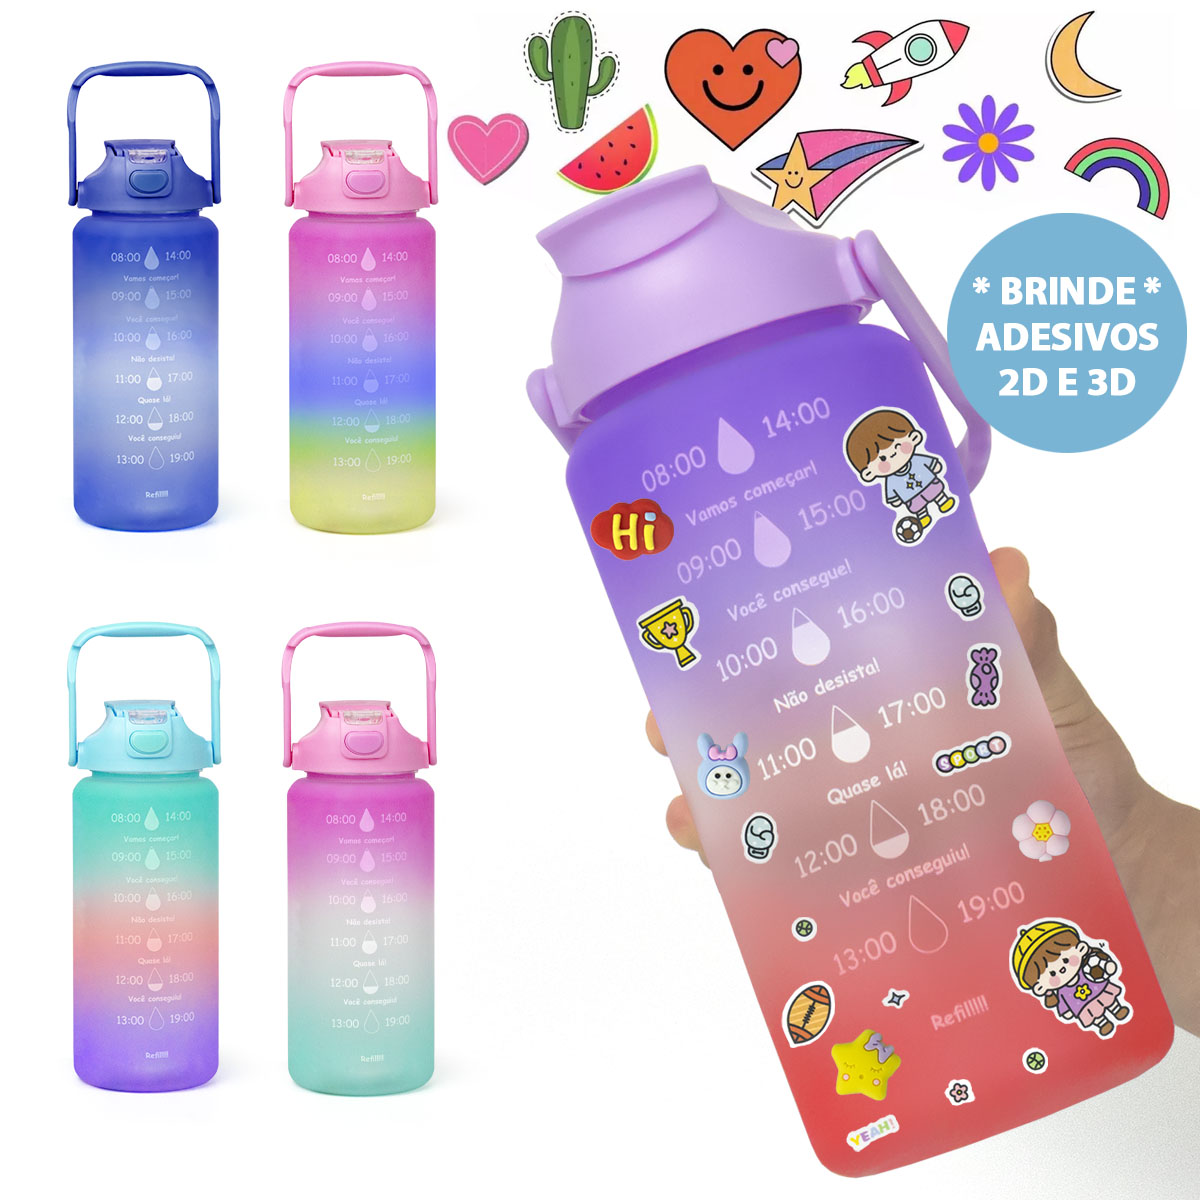 Garrafa de Água 2 Litros Degradê c/ Adesivos Fofo 3D e 2D Colorido Frases Motivacionais e Alça com suporte de Celular Squeeze